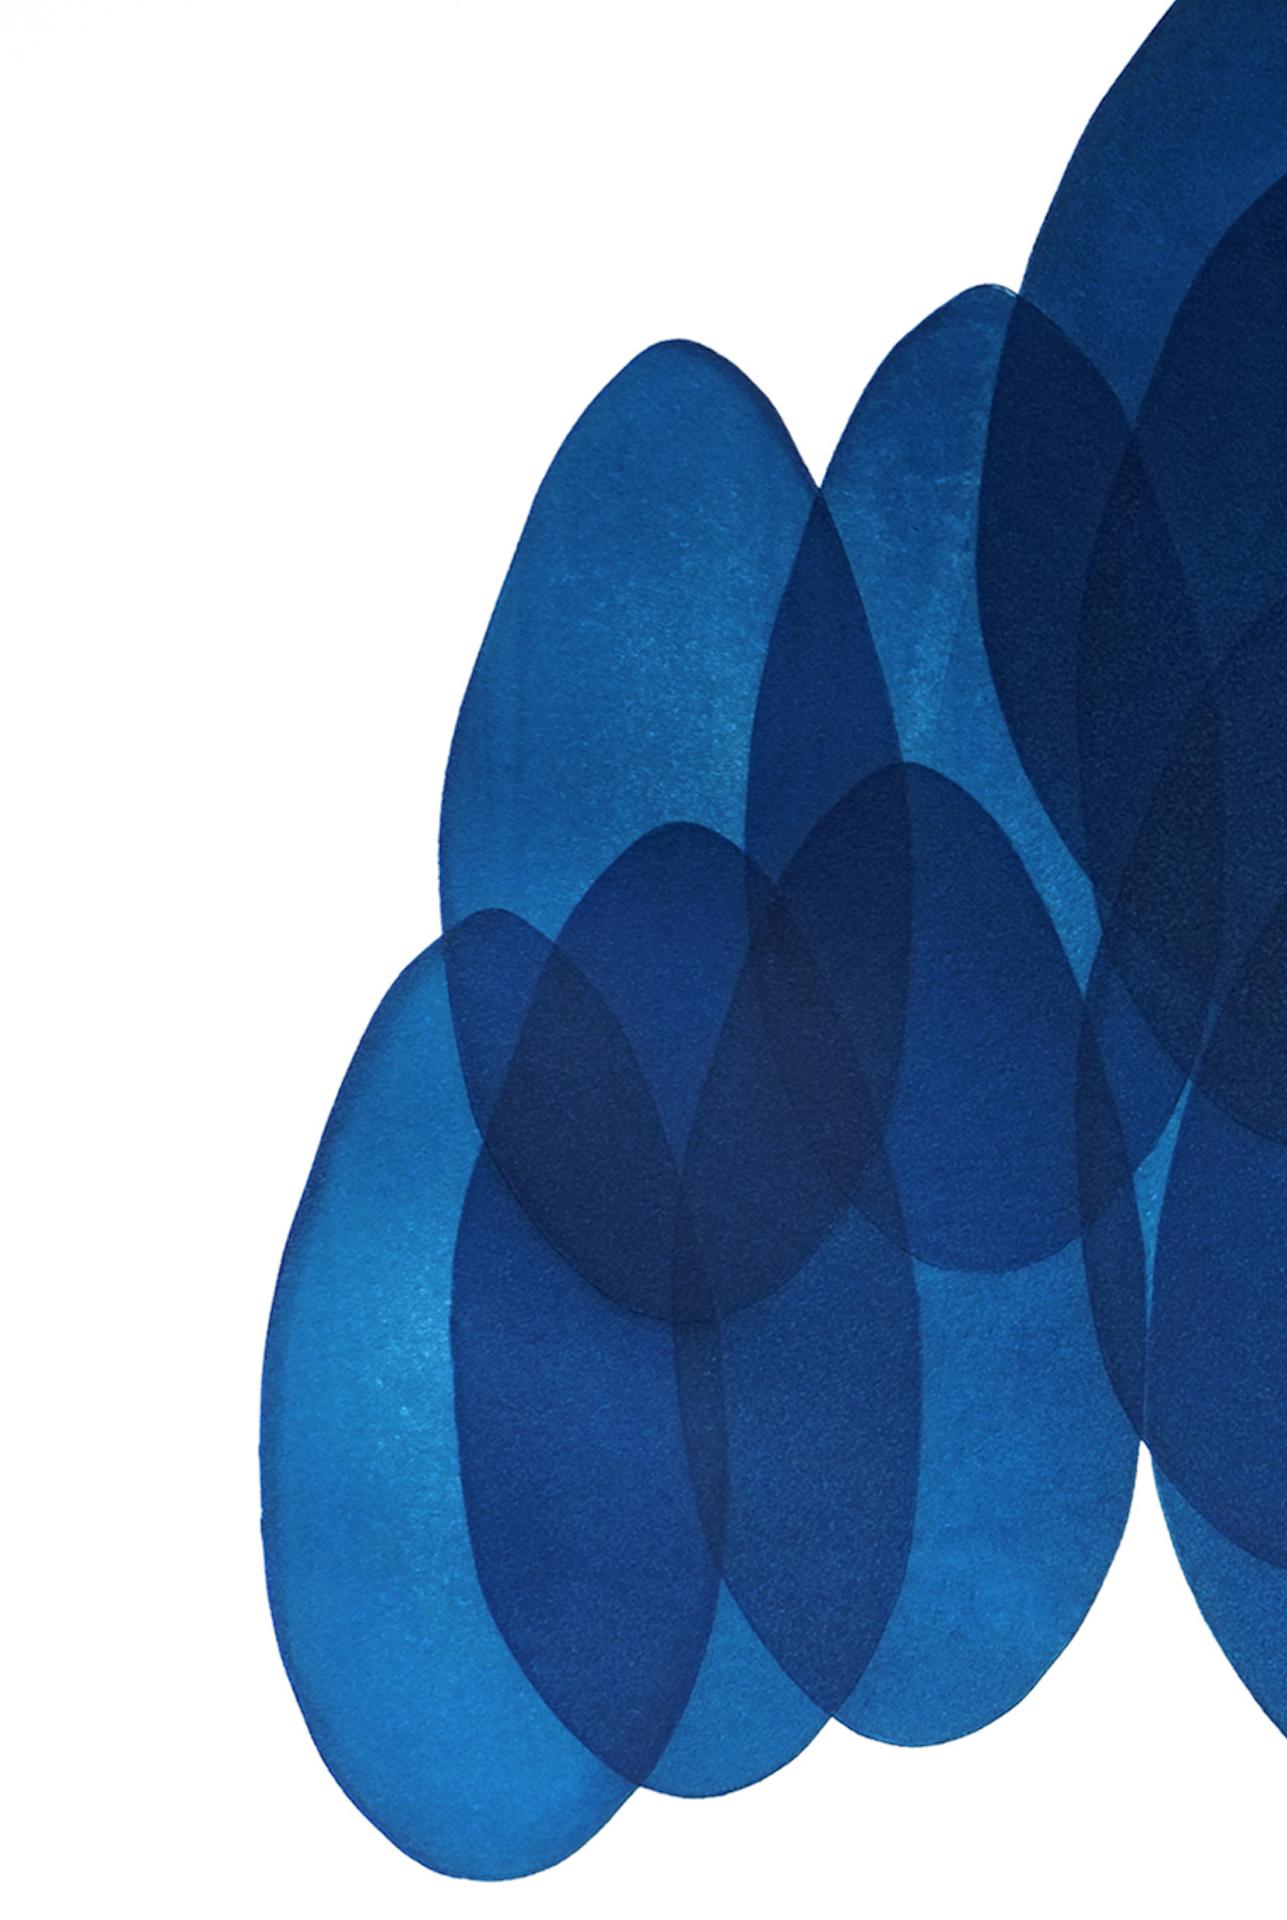 NV24, Originale zeitgenössische Kunst, abstrakte blaue und weiße Kunst, geometrische Kunst  (Violett), Still-Life Print, von Jonathan Moss